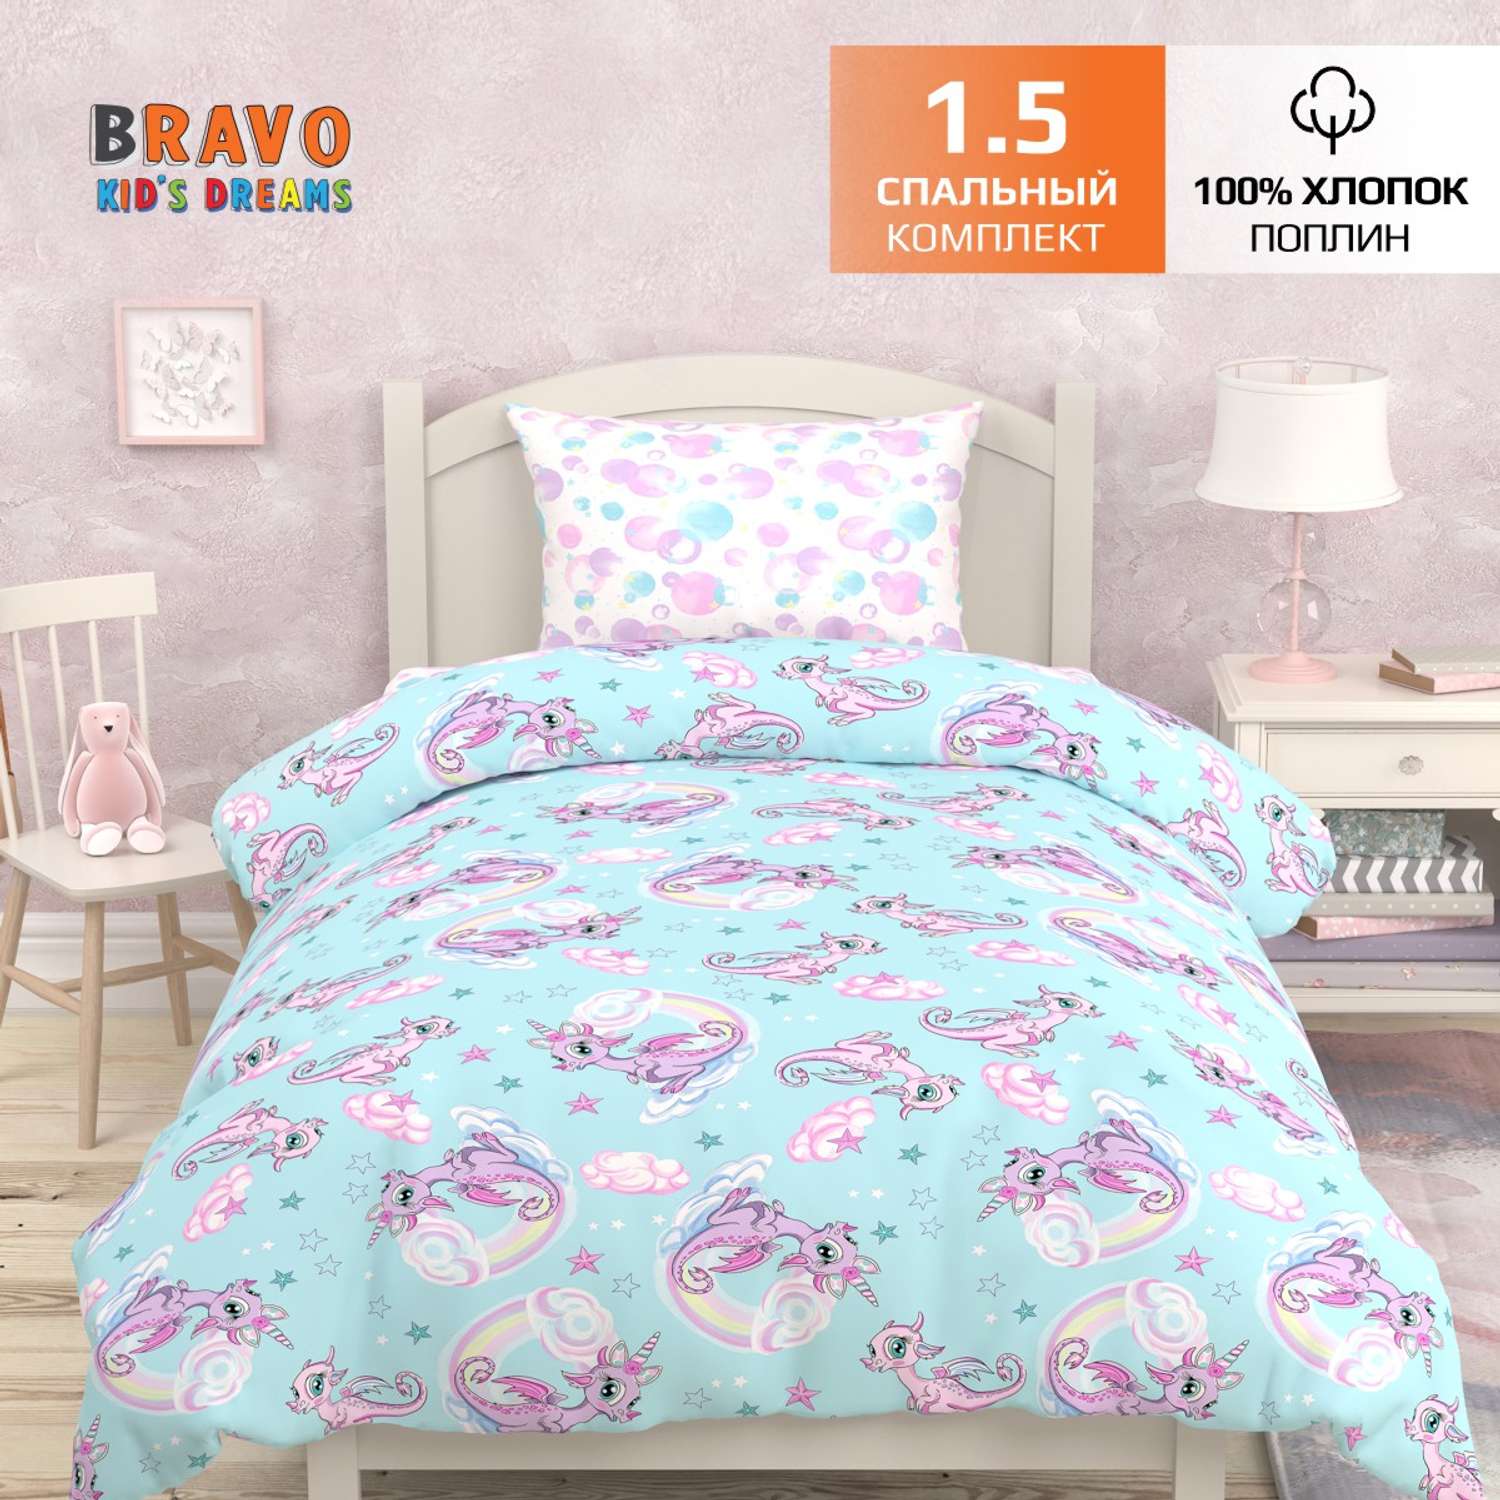 Комплект постельного белья BRAVO kids dreams Единороги 1.5 спальный 3 предмета наволочка 70х70 - фото 1